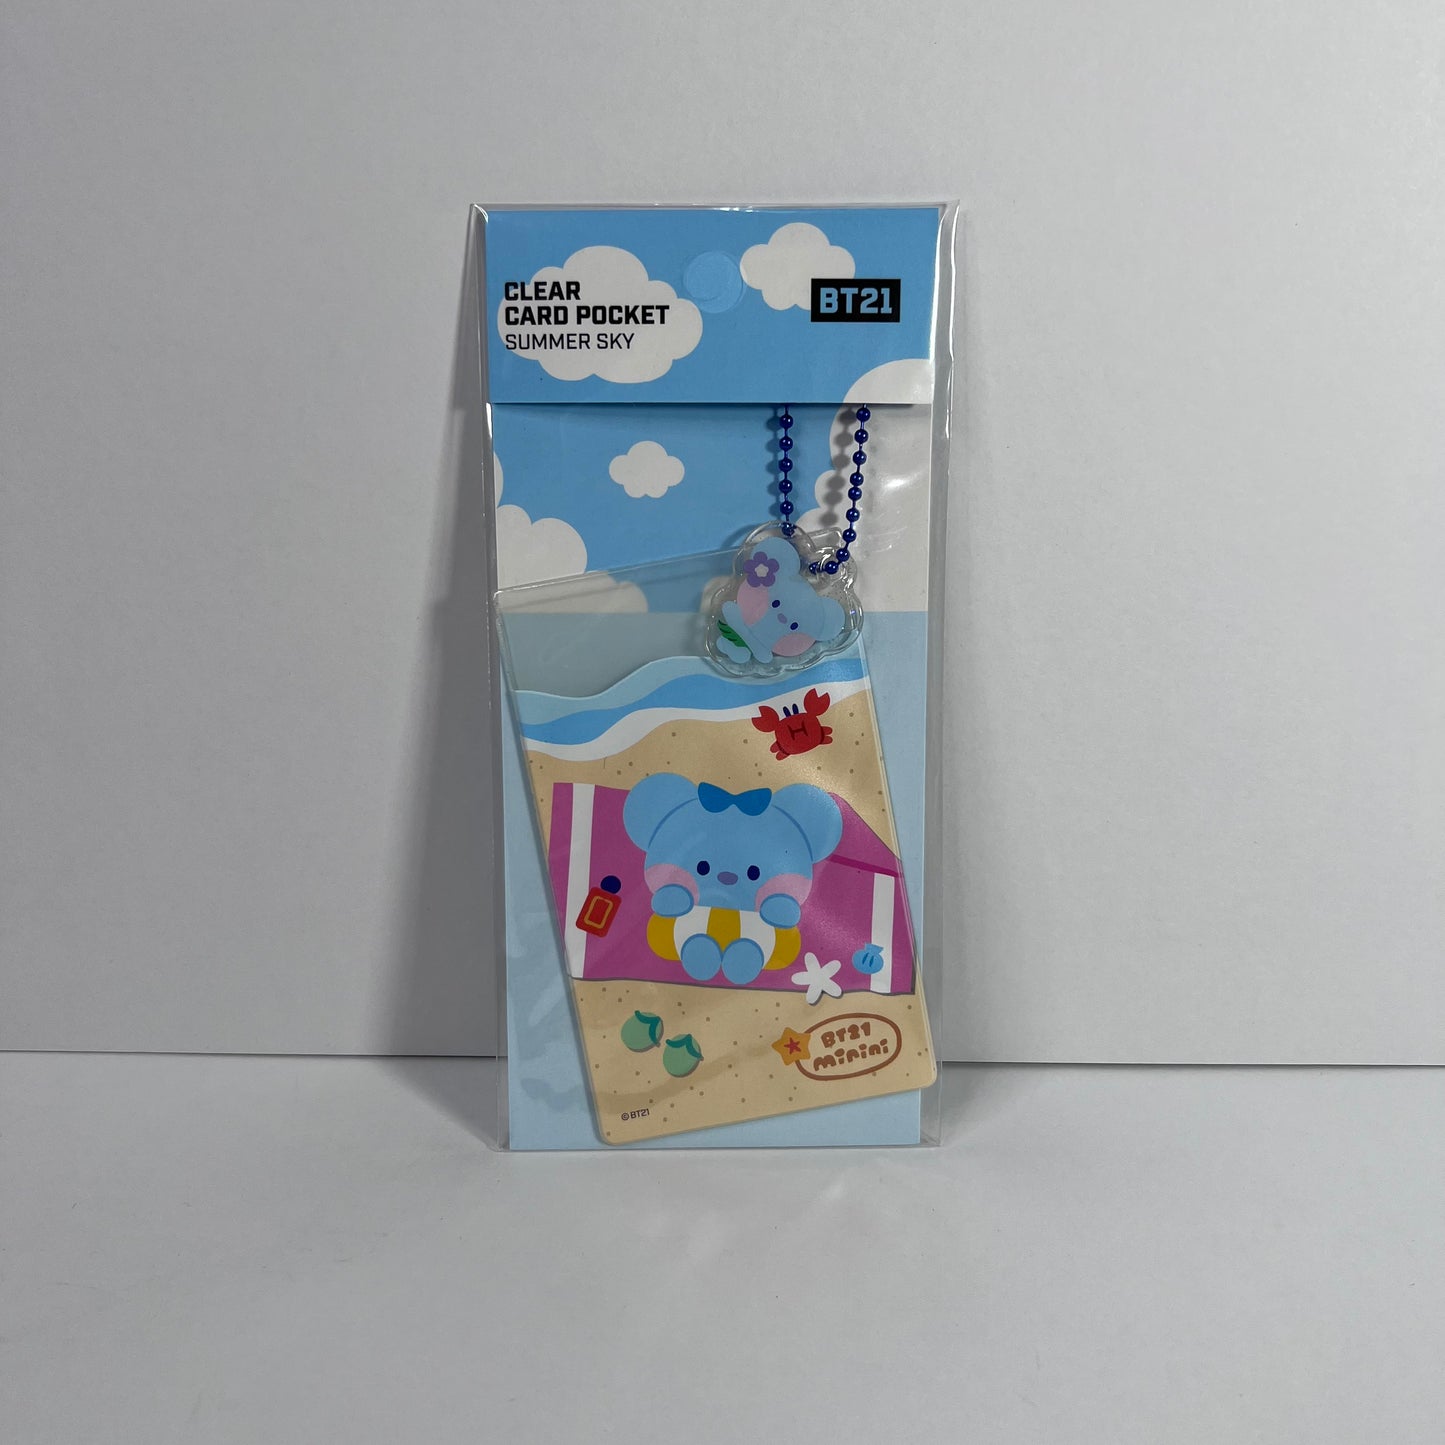 BT21 Minini Clear Card Pocket (Summer Sky)